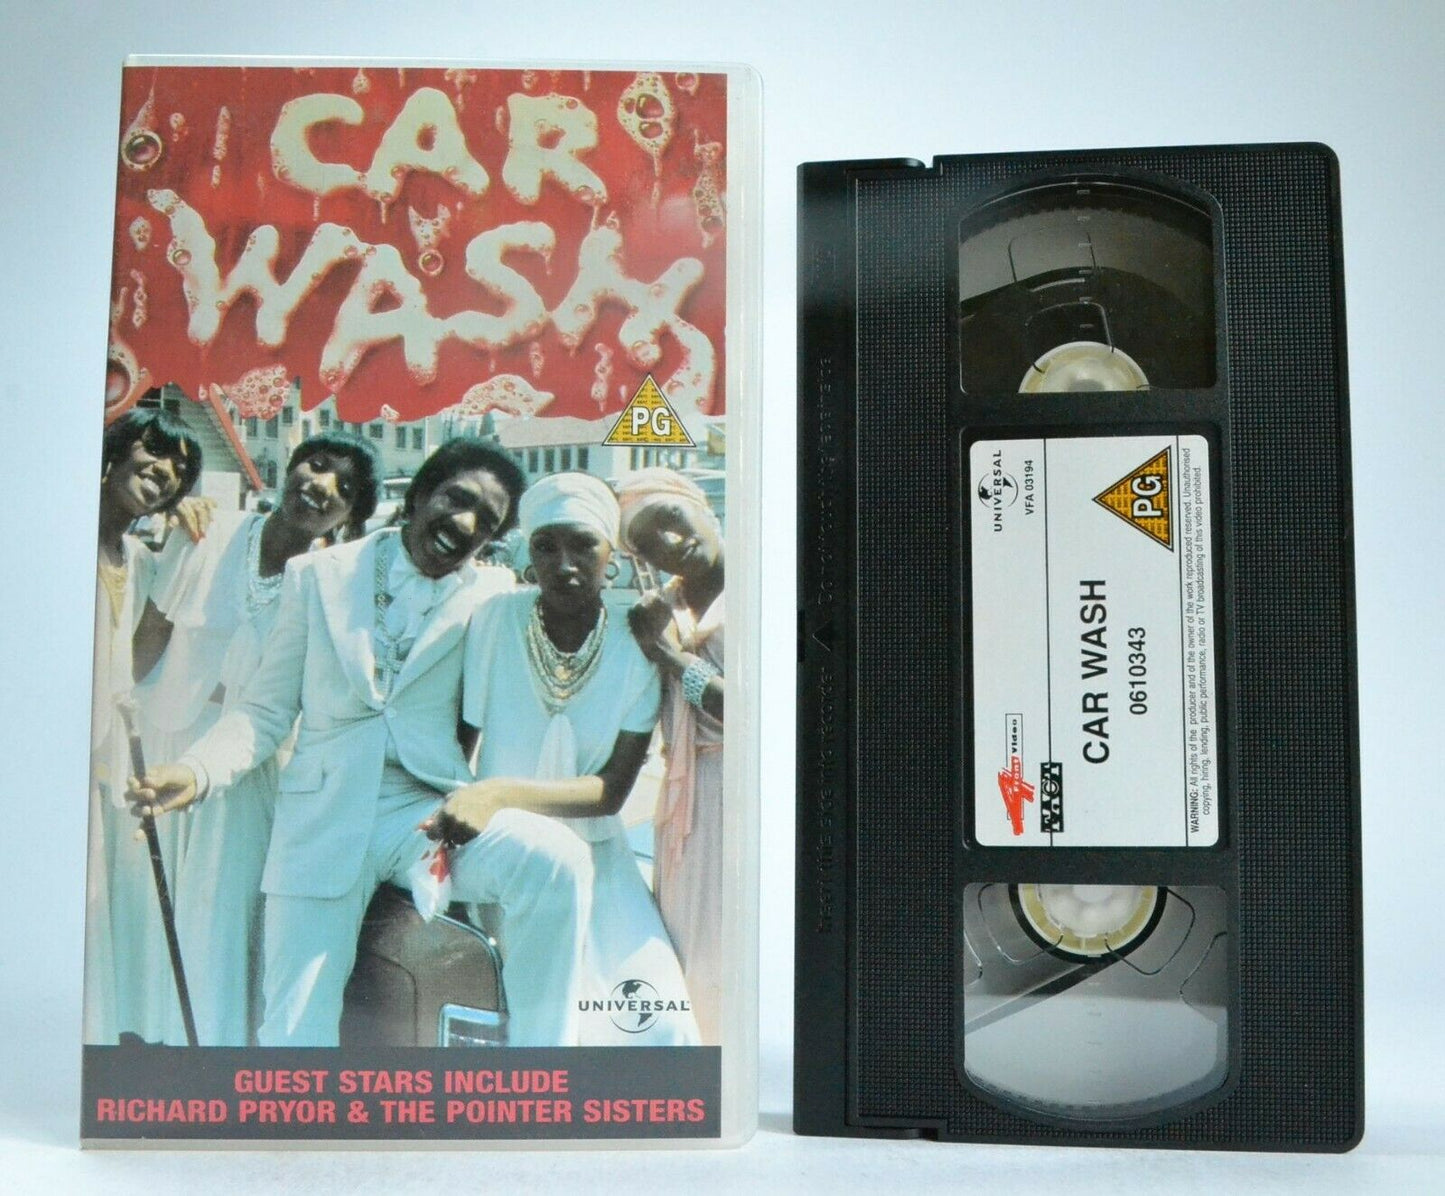 Car Wash; [Michael Schultz] Episodic Comedy - George Carlin/ Richard Pryor - VHS-